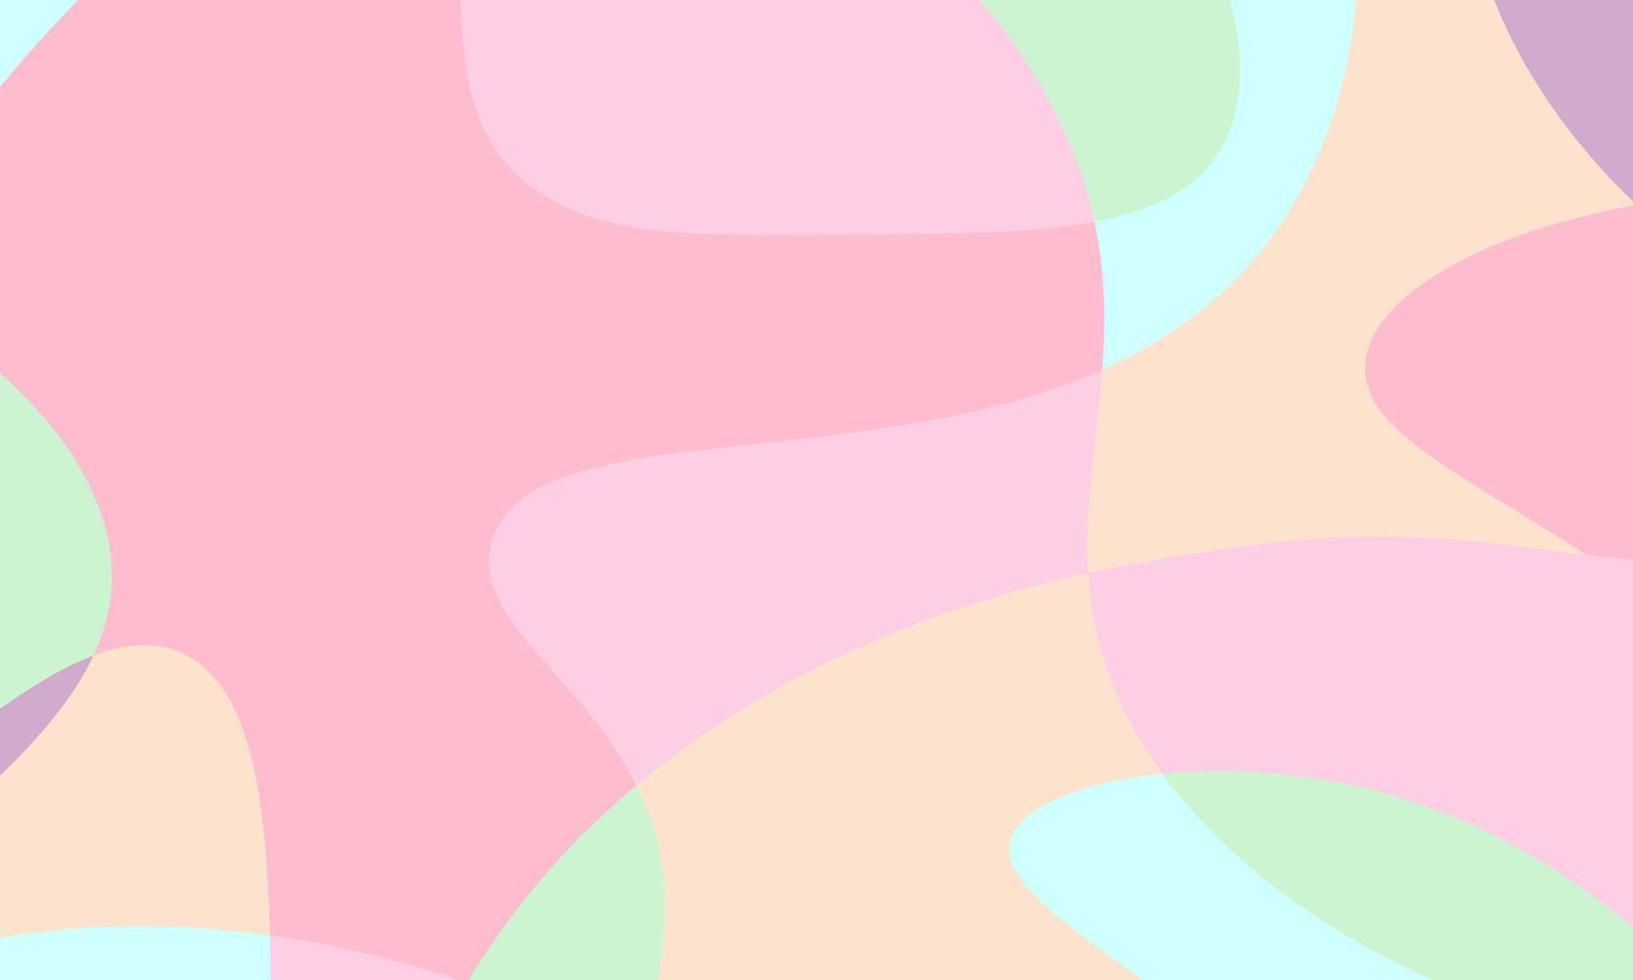 abstrakte pastellfarbene Flüssigkeit und kurviger geometrischer Hintergrund für Banner. vektor